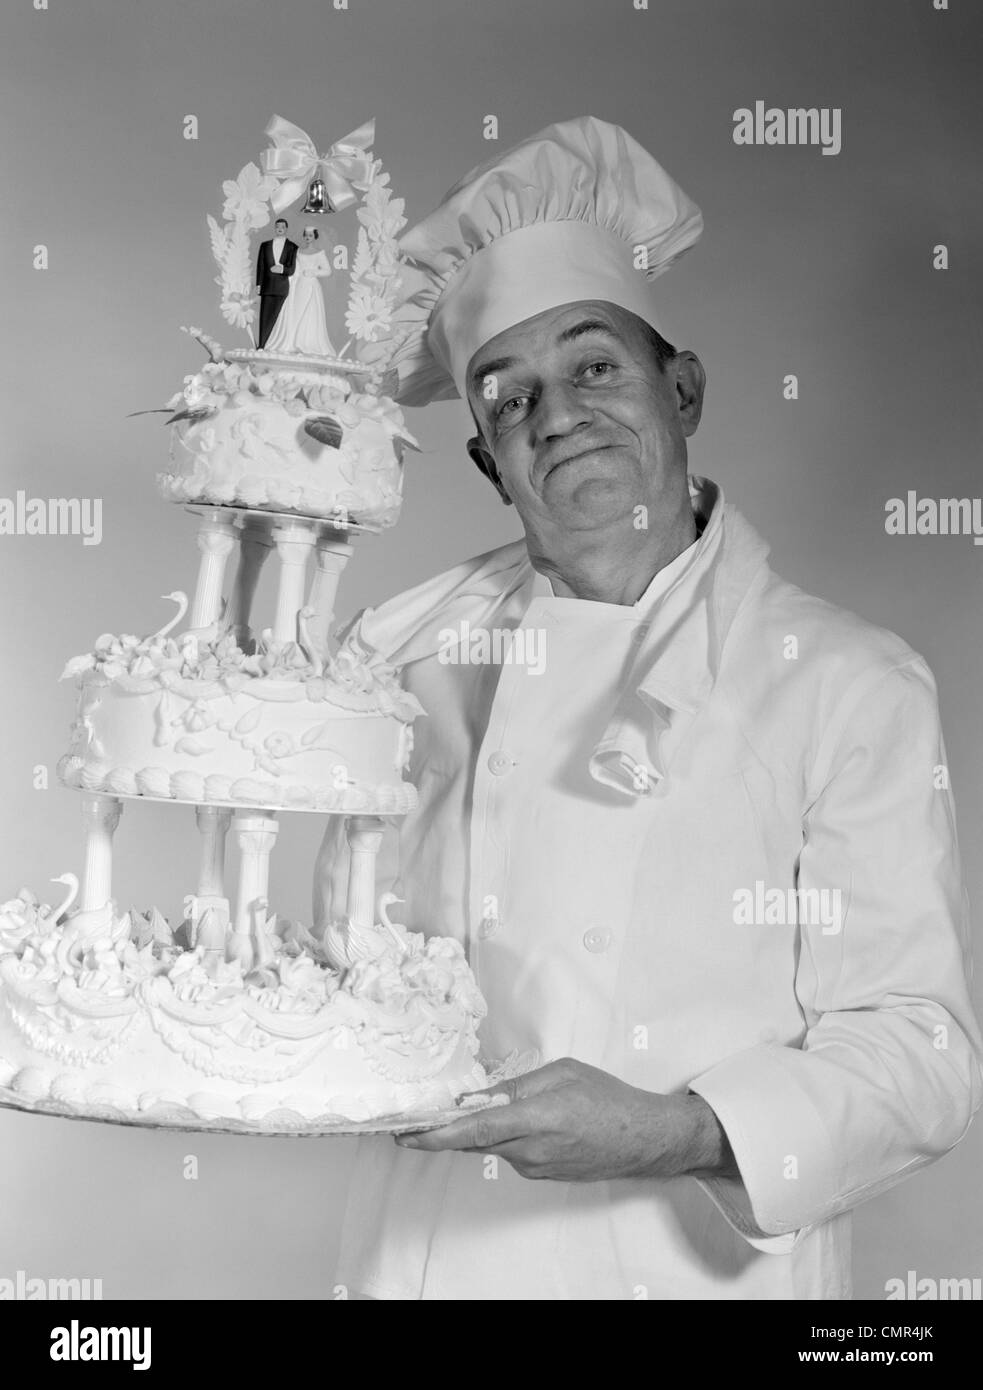 Années 1950 Années 1960 HOMME PLUS ÂGÉ CHEF LOOKING AT CAMERA SMILING HOLDING 3 gâteau de mariage Banque D'Images